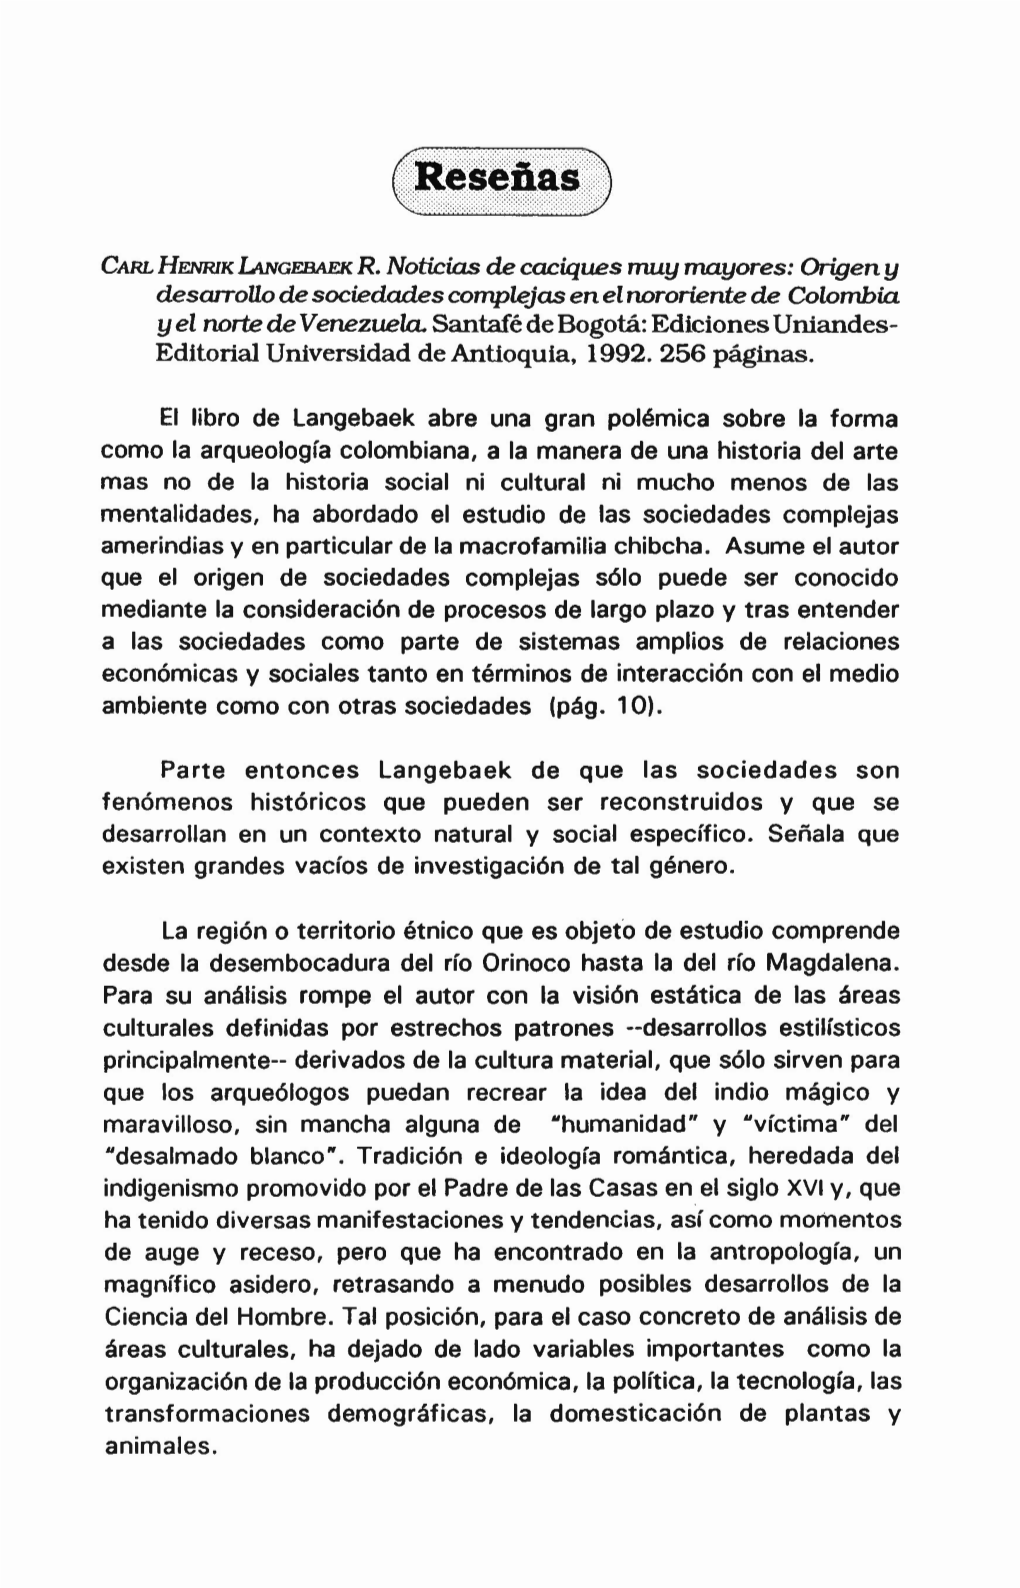 CARL HENRIK LANGEBAEK R. Noticias De Caciques Rrw.Ymayores: Origen Y Desarrollo De Sociedades Complejas En El Nororiente De Colombia Yel Norte De Venezuela